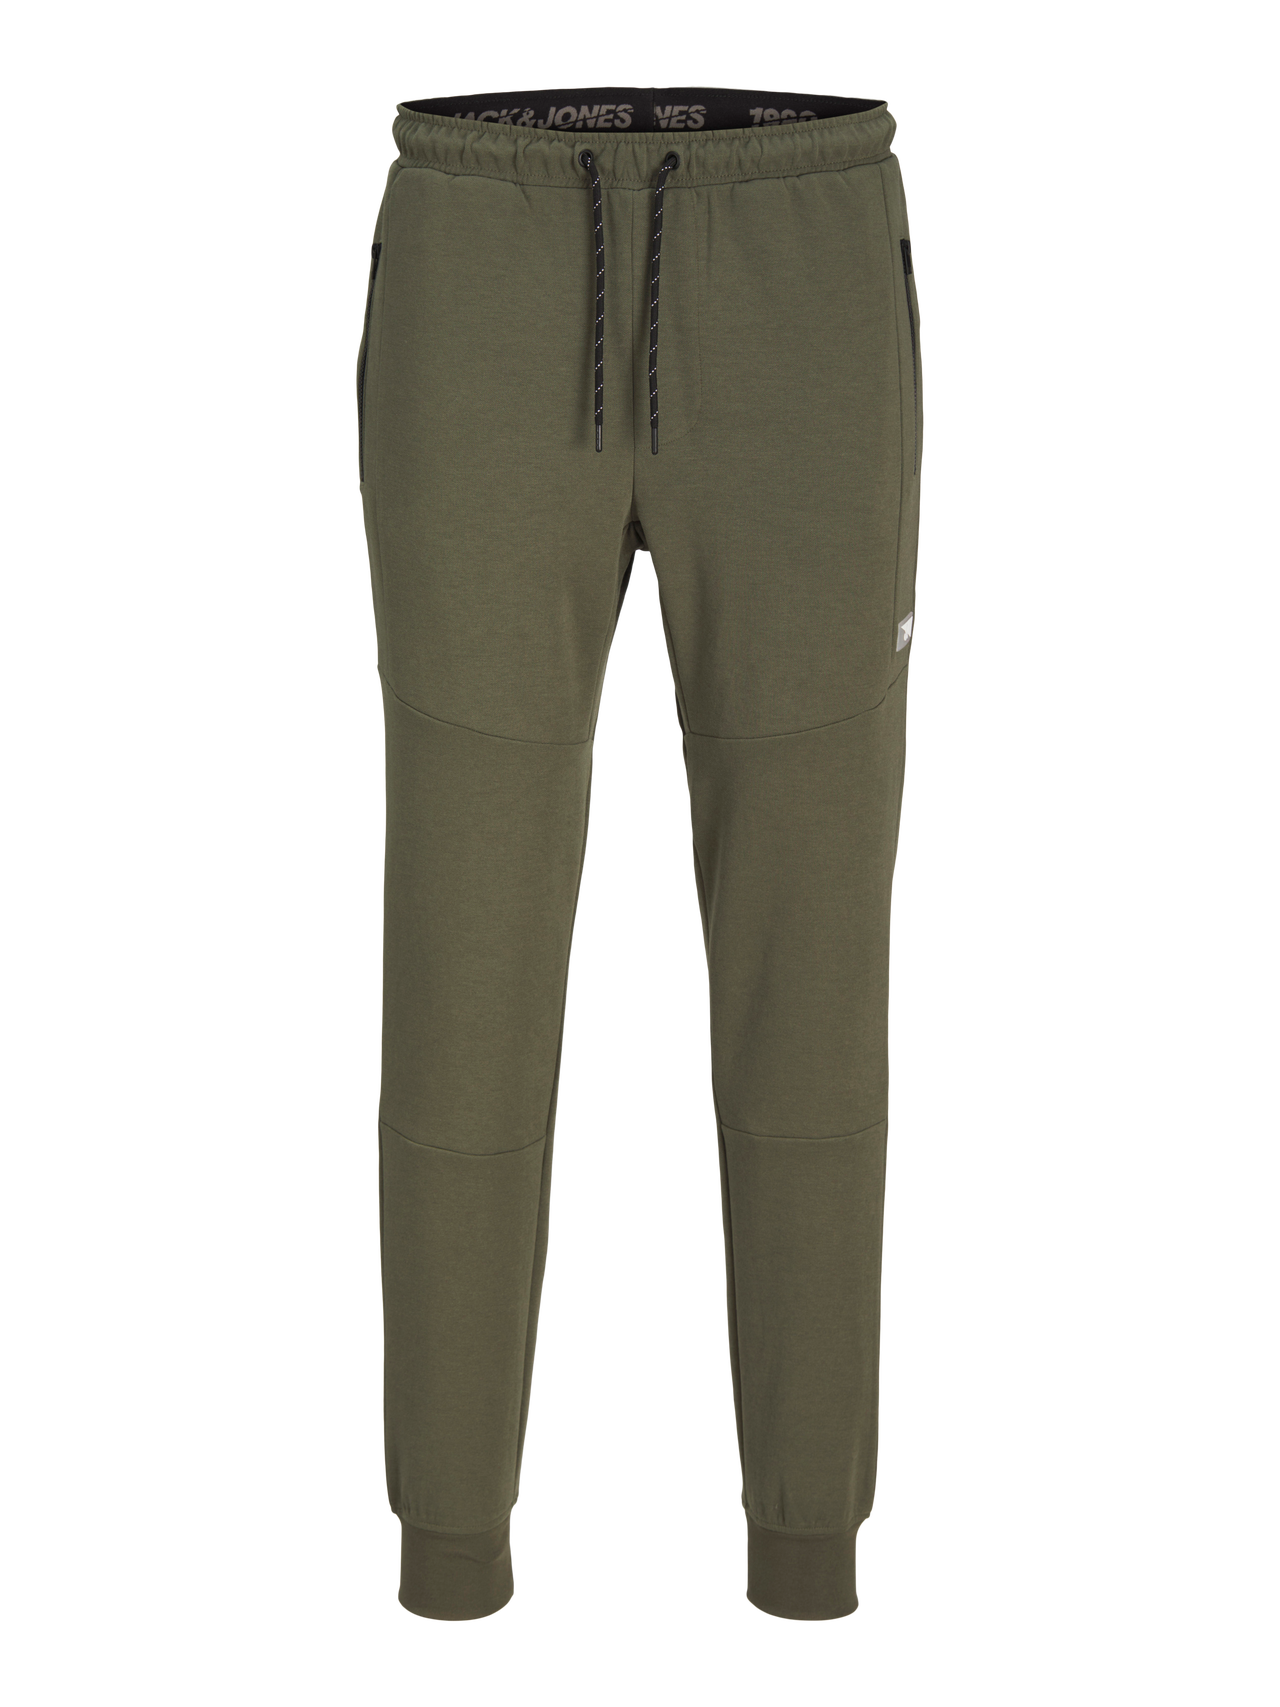 Jack & Jones Slim Fit Spodnie dresowe -Dusty Olive - 12184970